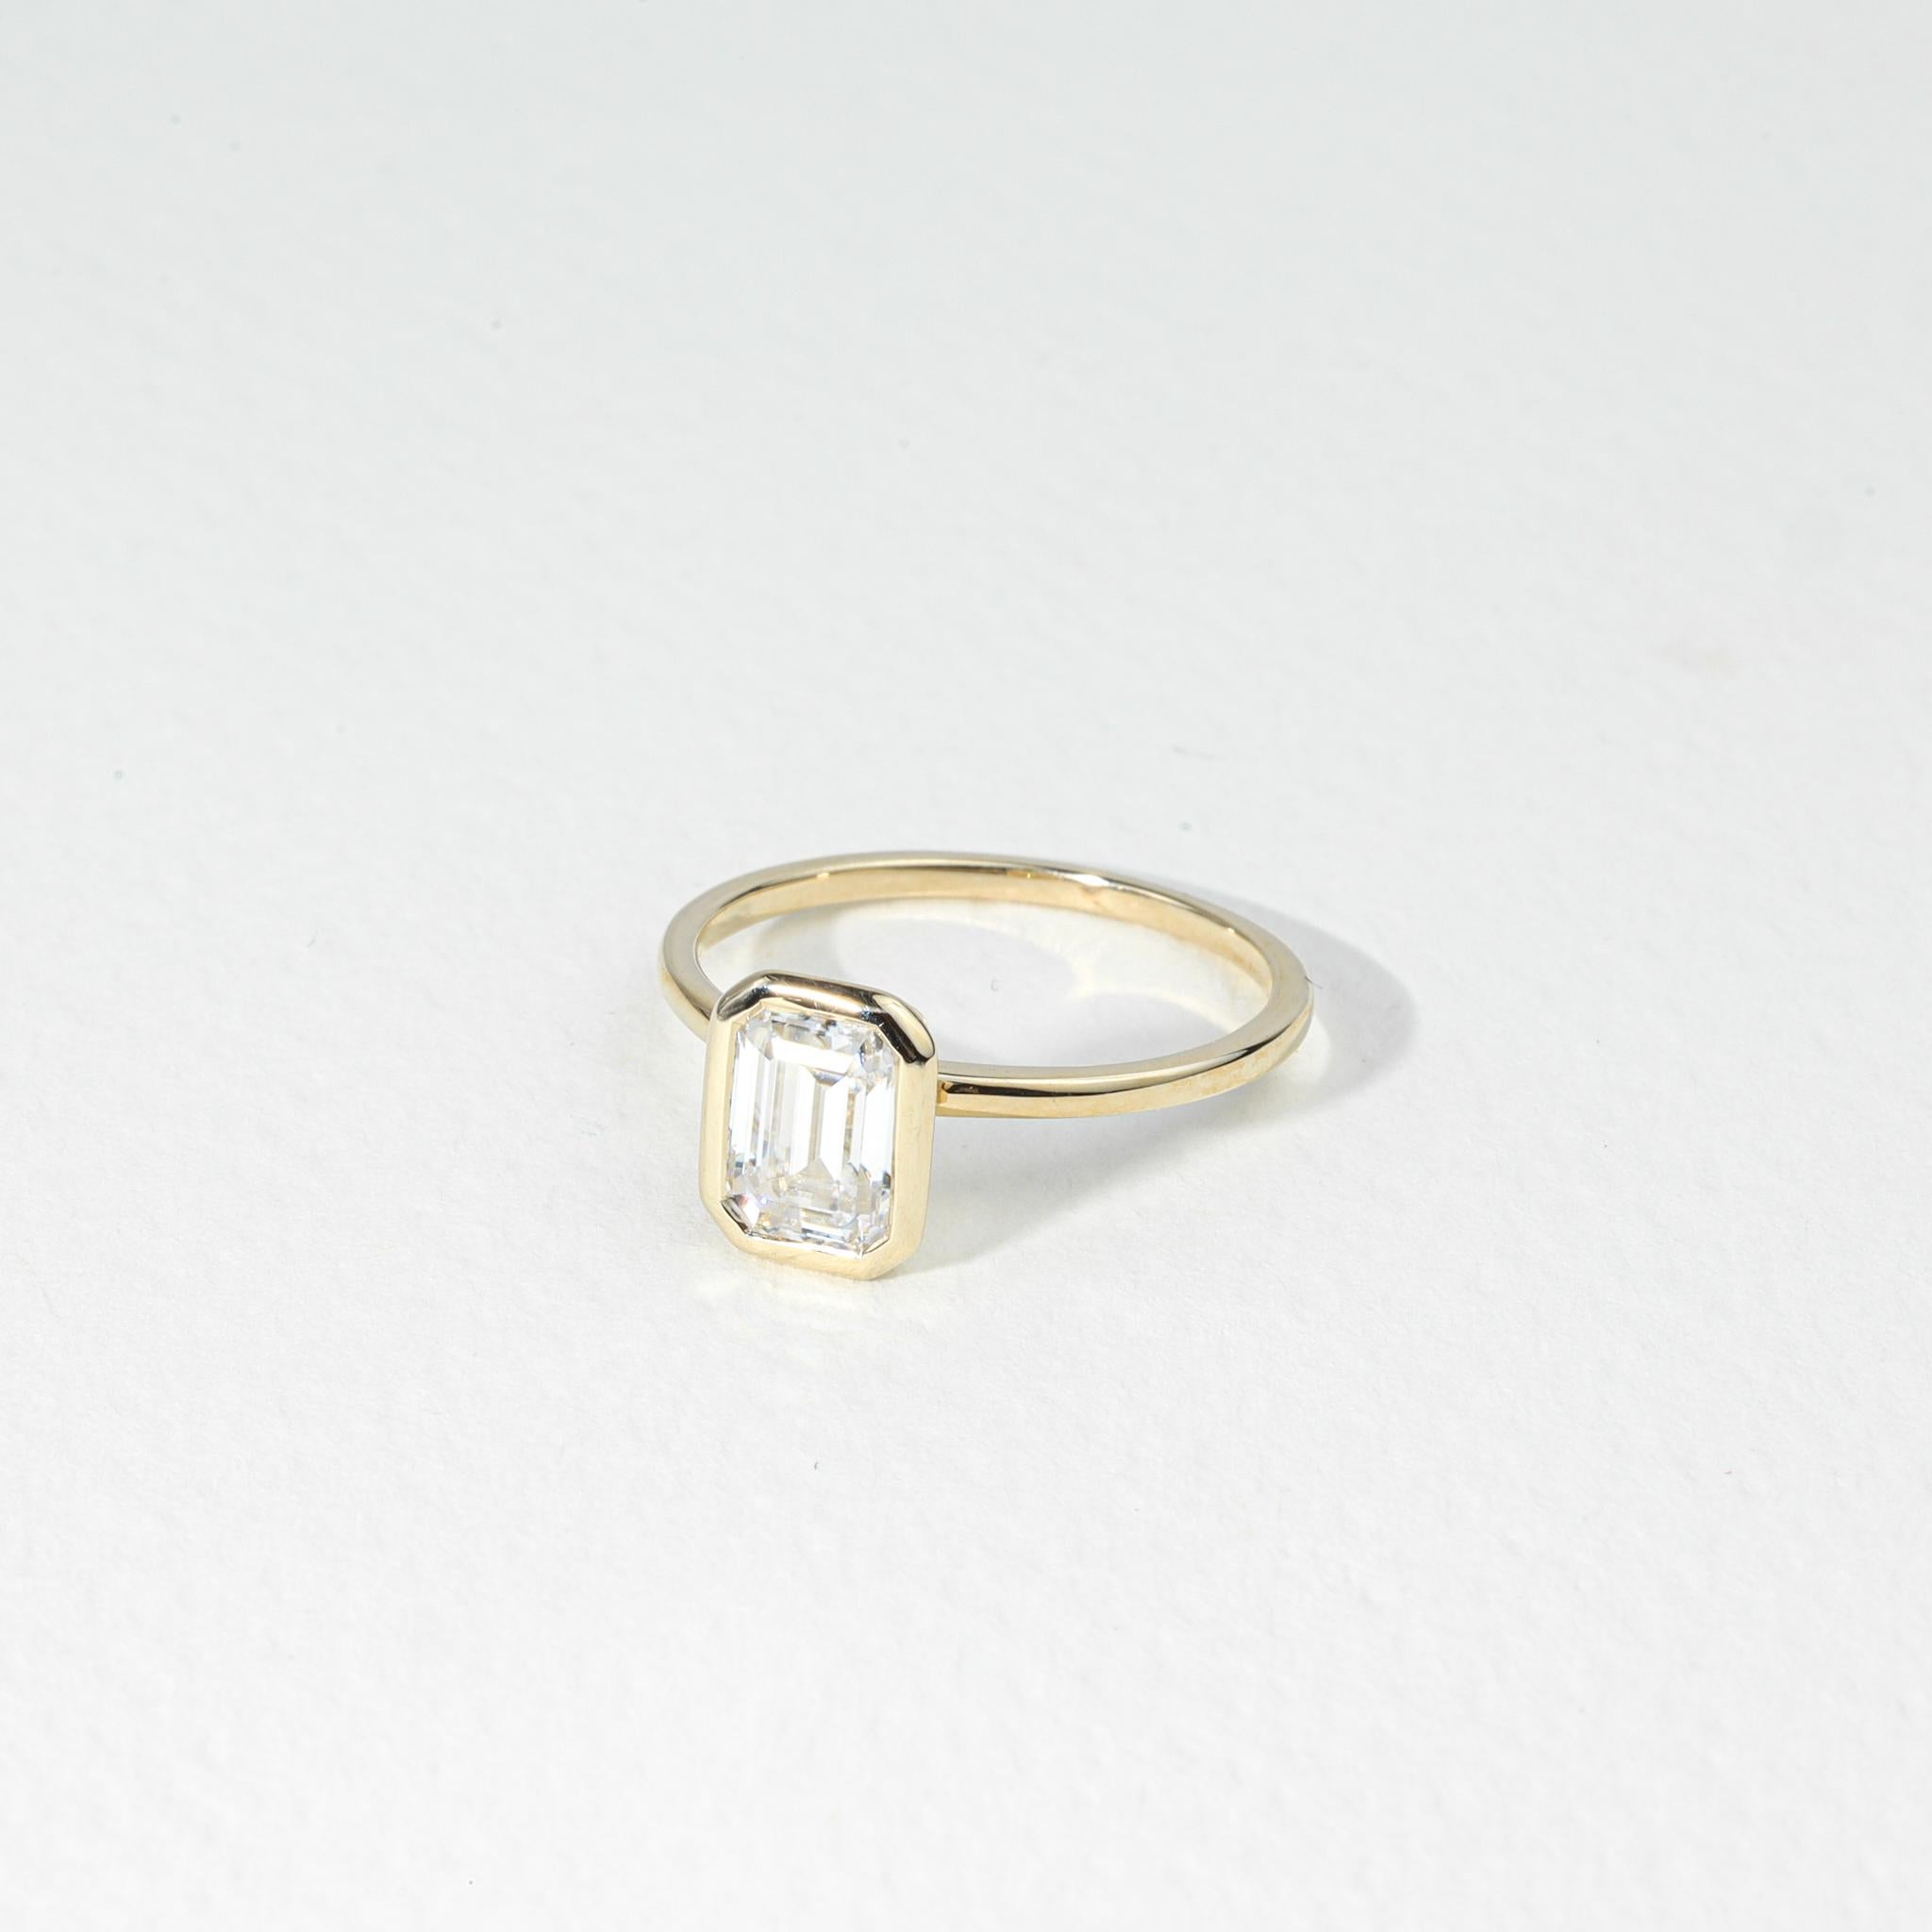 Rapport GIA Certified D VS1, 1 Carat Emerald Cut Solitaire Diamond Engagement Ring

Disponible en or blanc 18k.

Le même design peut être réalisé avec d'autres pierres précieuses sur demande.

Détails du produit :

- Or massif Or jaune 18k 

-